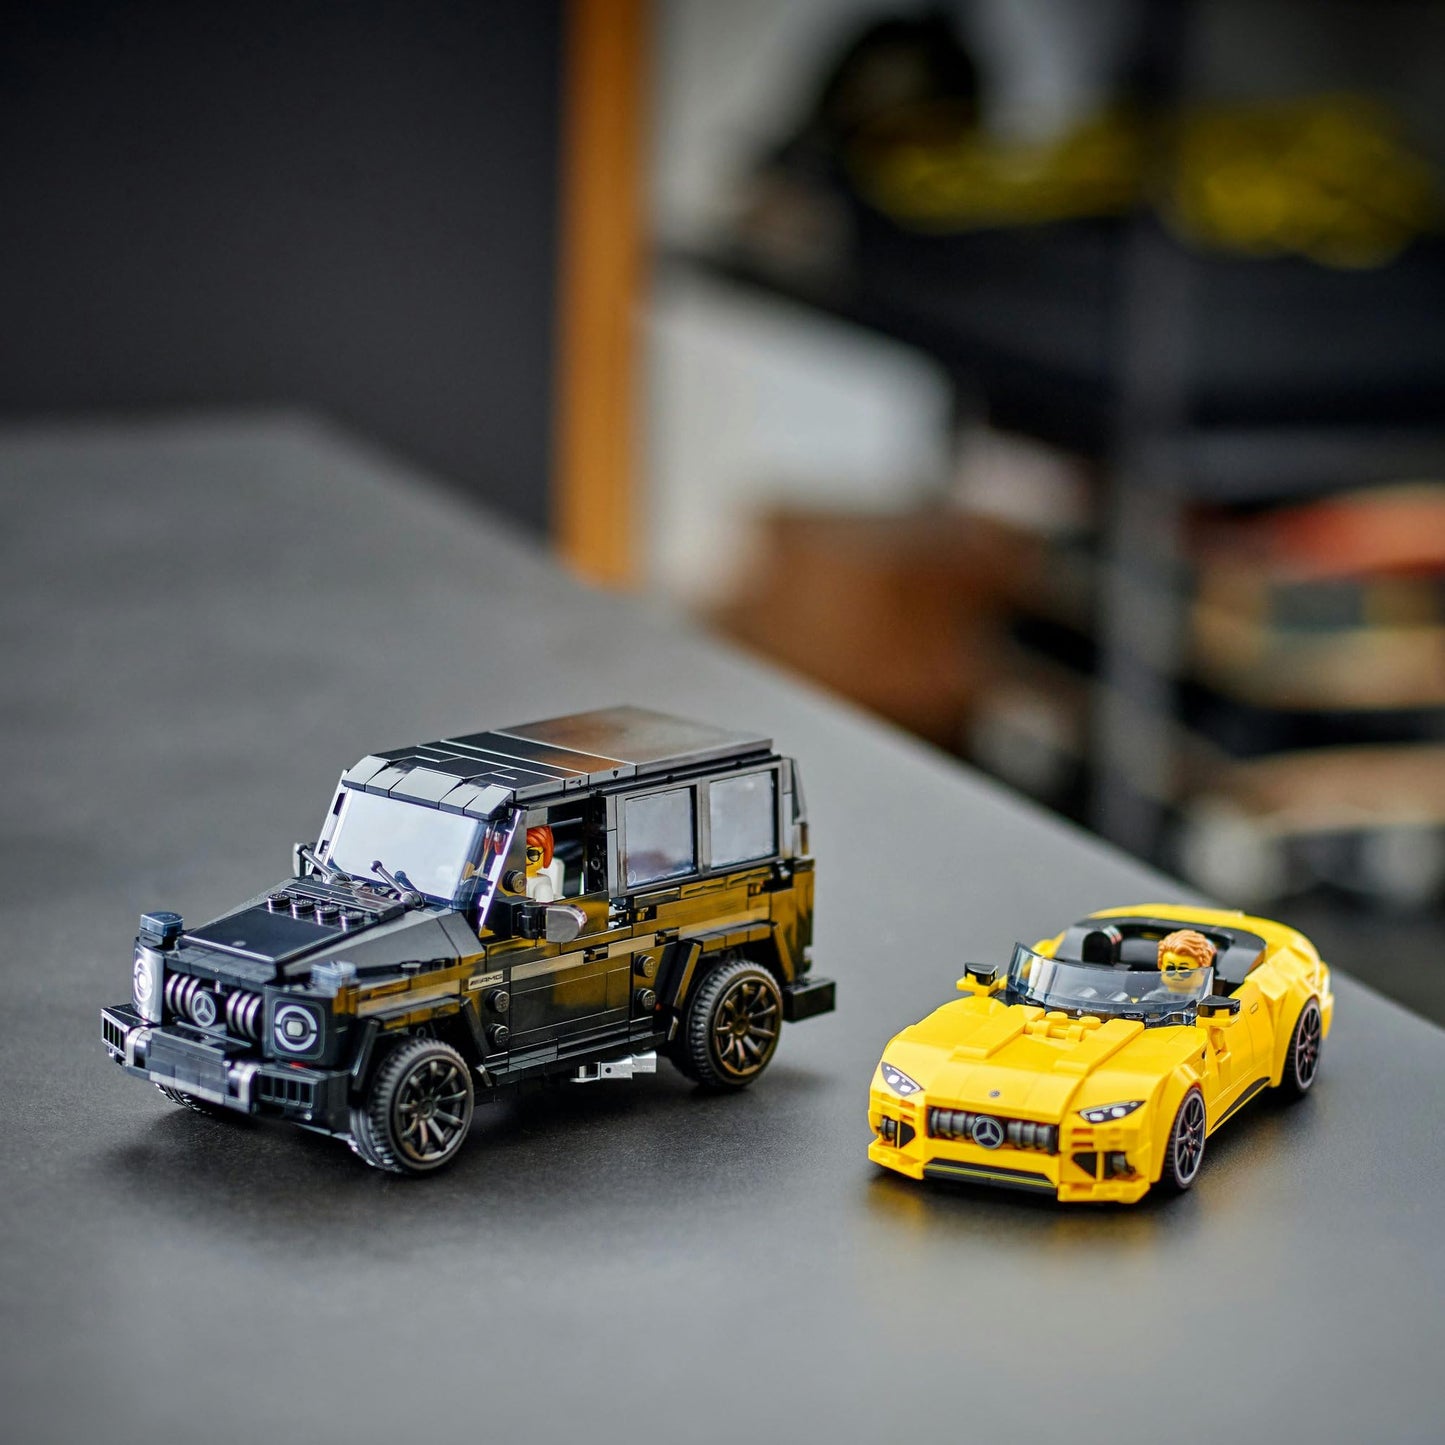 LEGO® Speed Champions Mercedes-AMG G 63 & Mercedes-AMG SL 63 76924